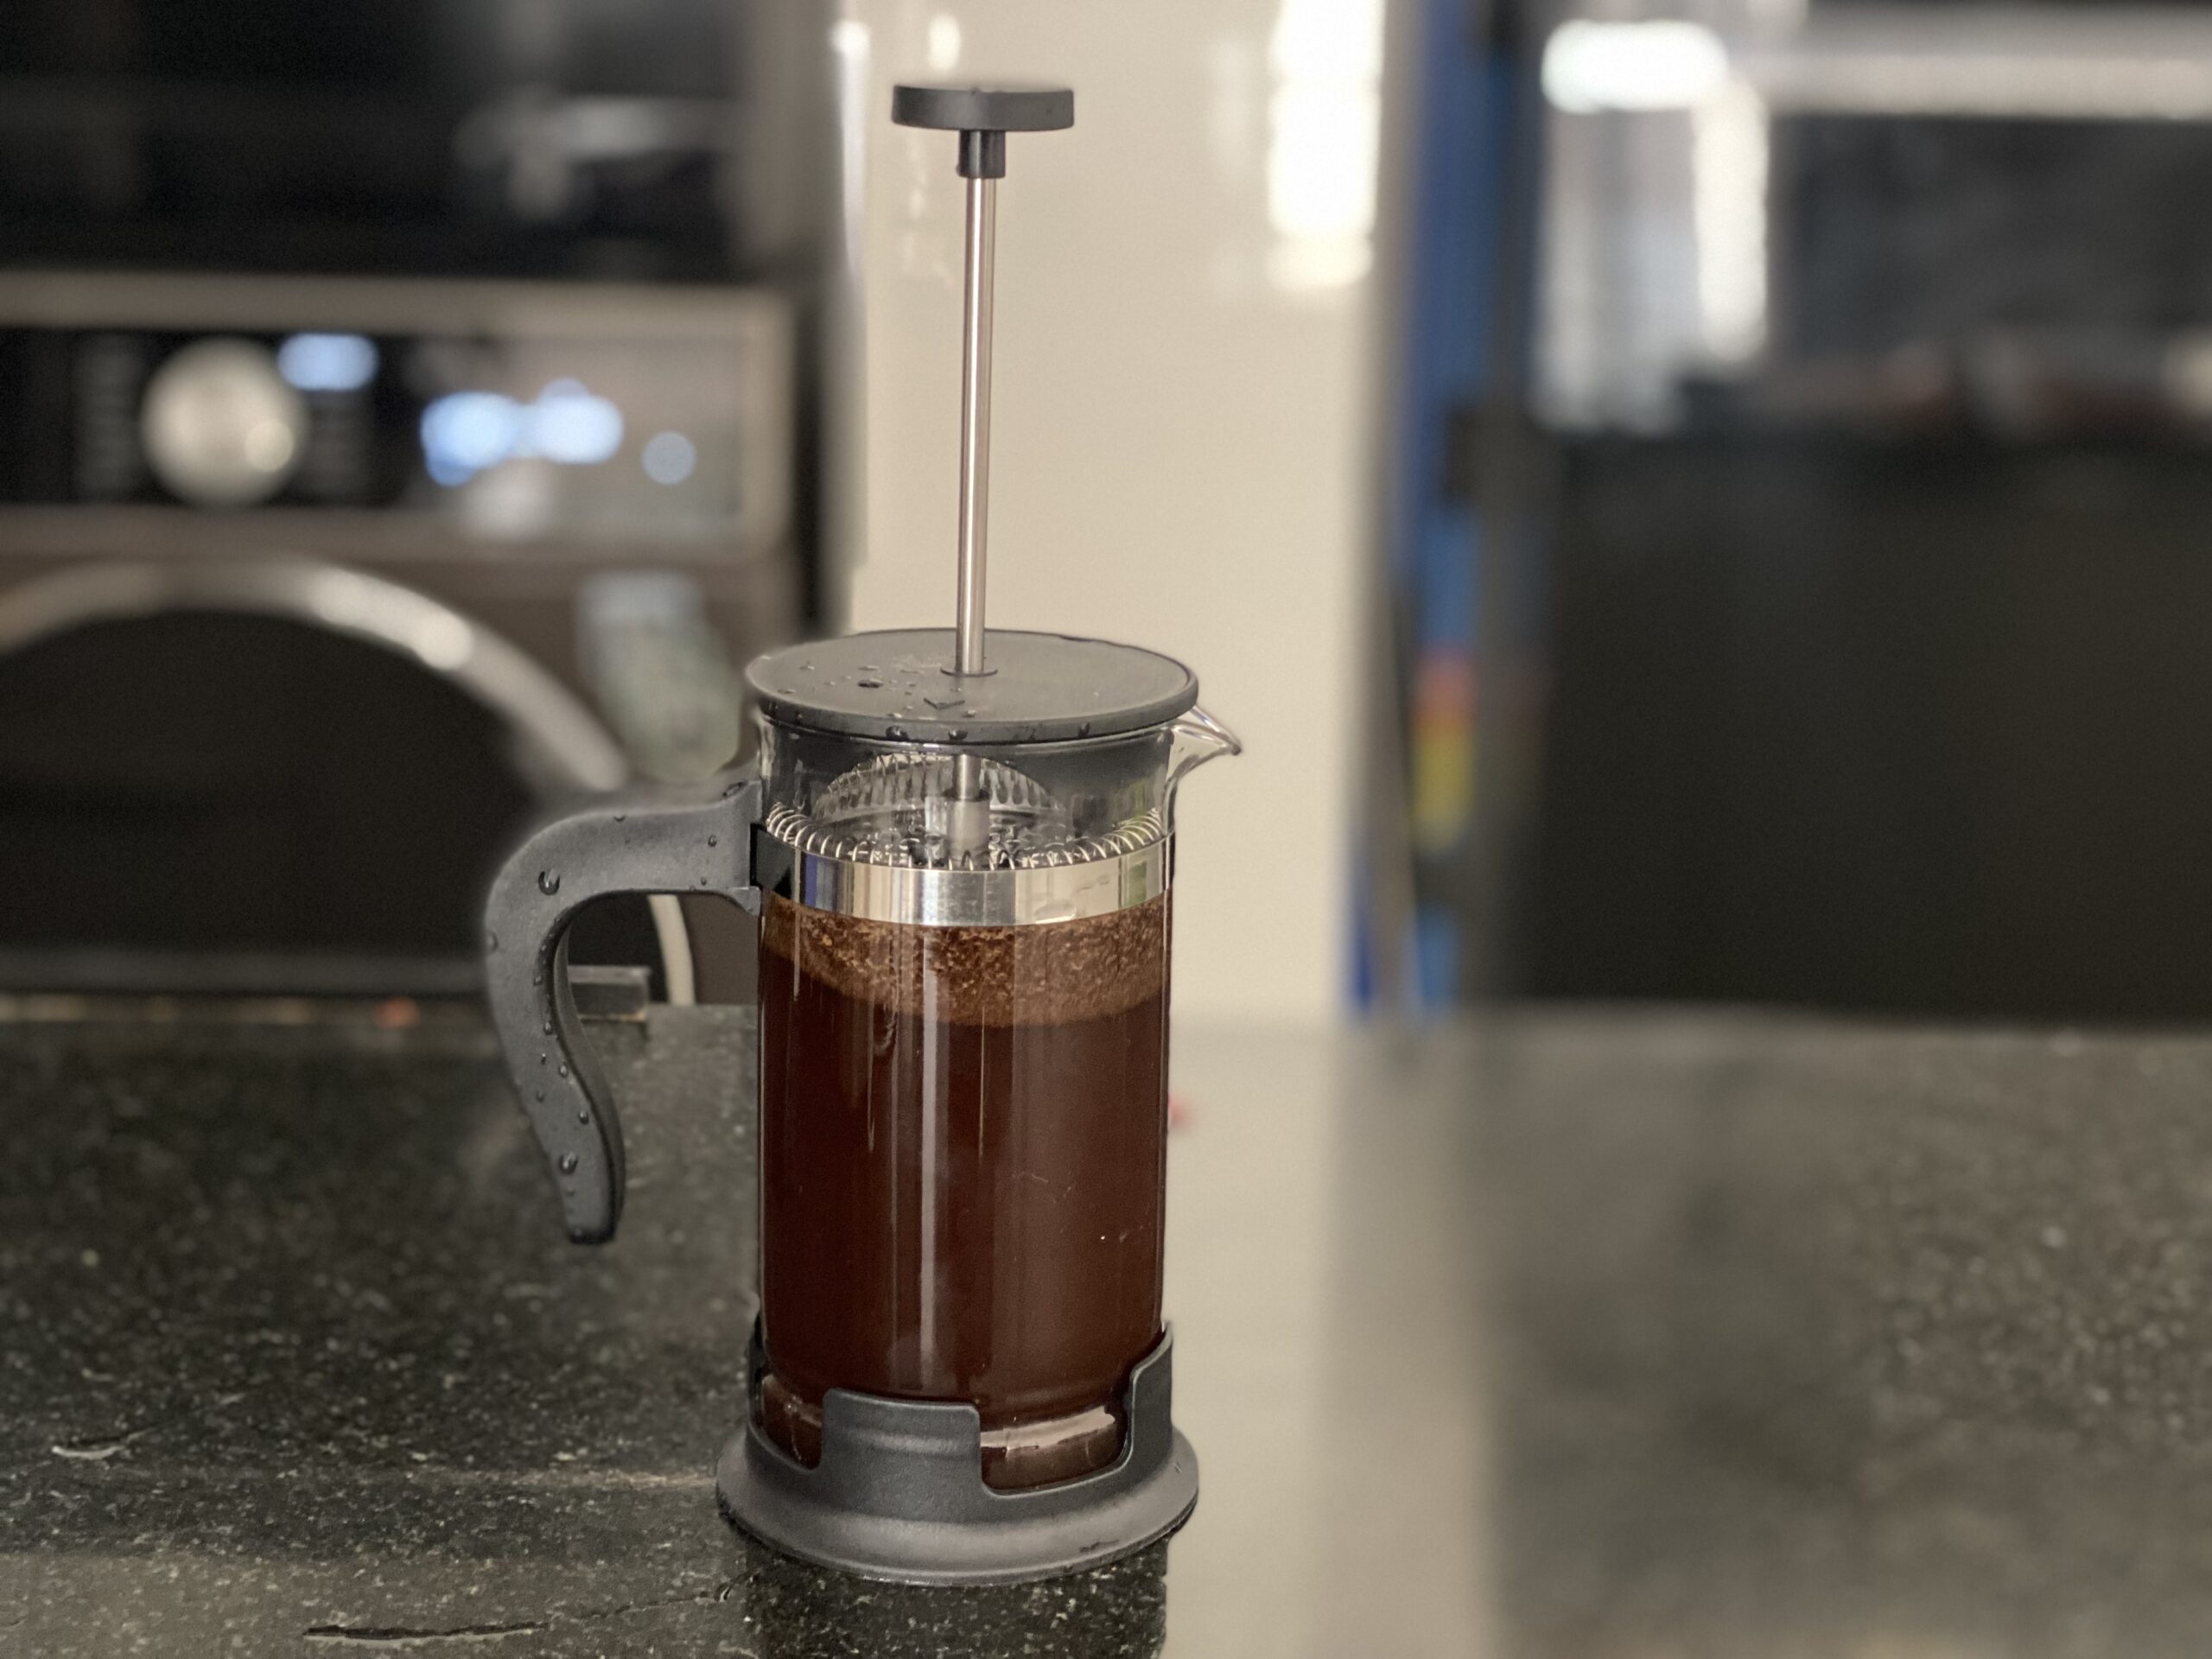 Put a lid on coffee press